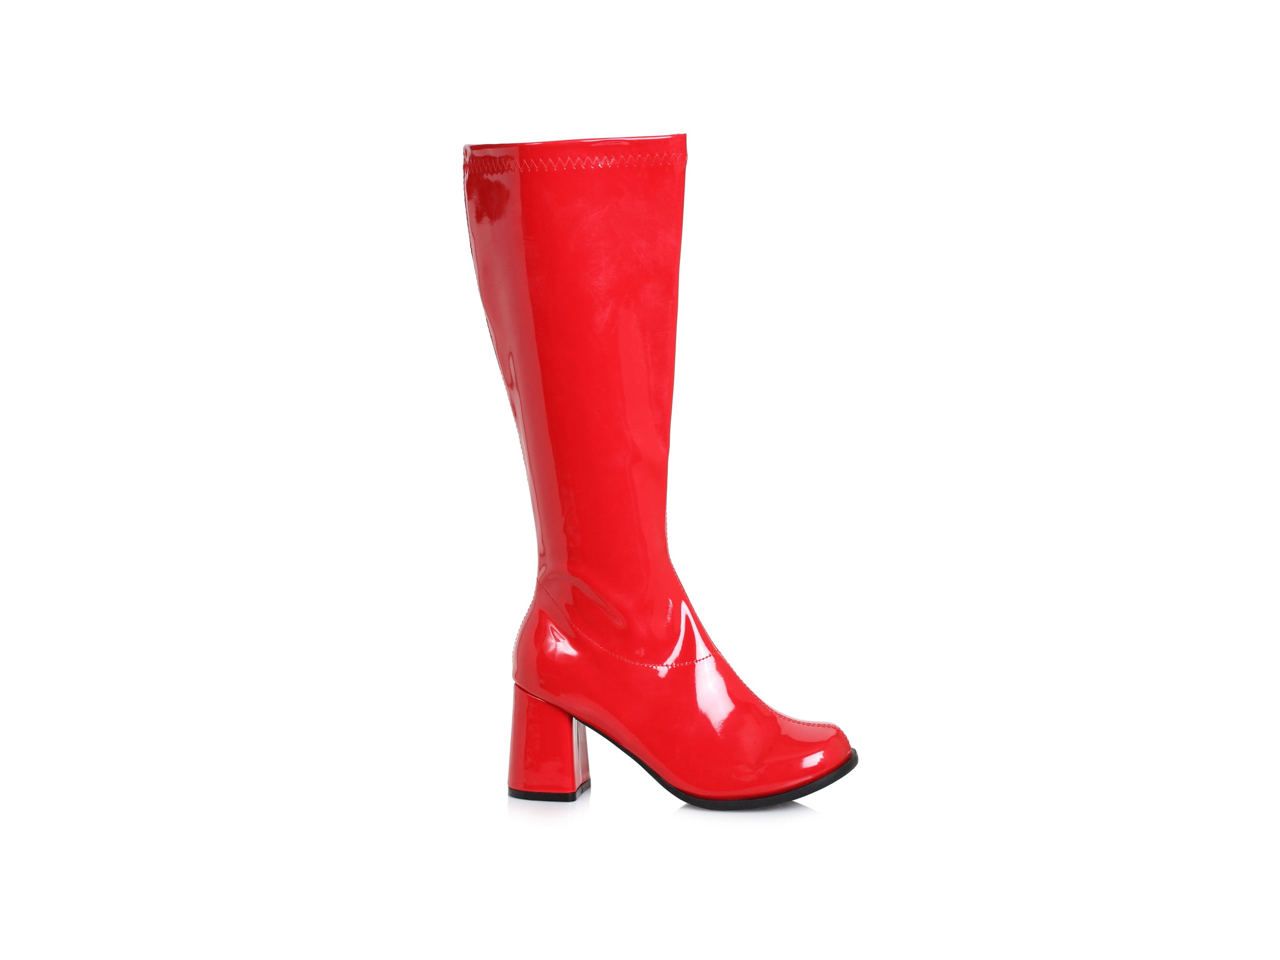 wide width rain boots size 12